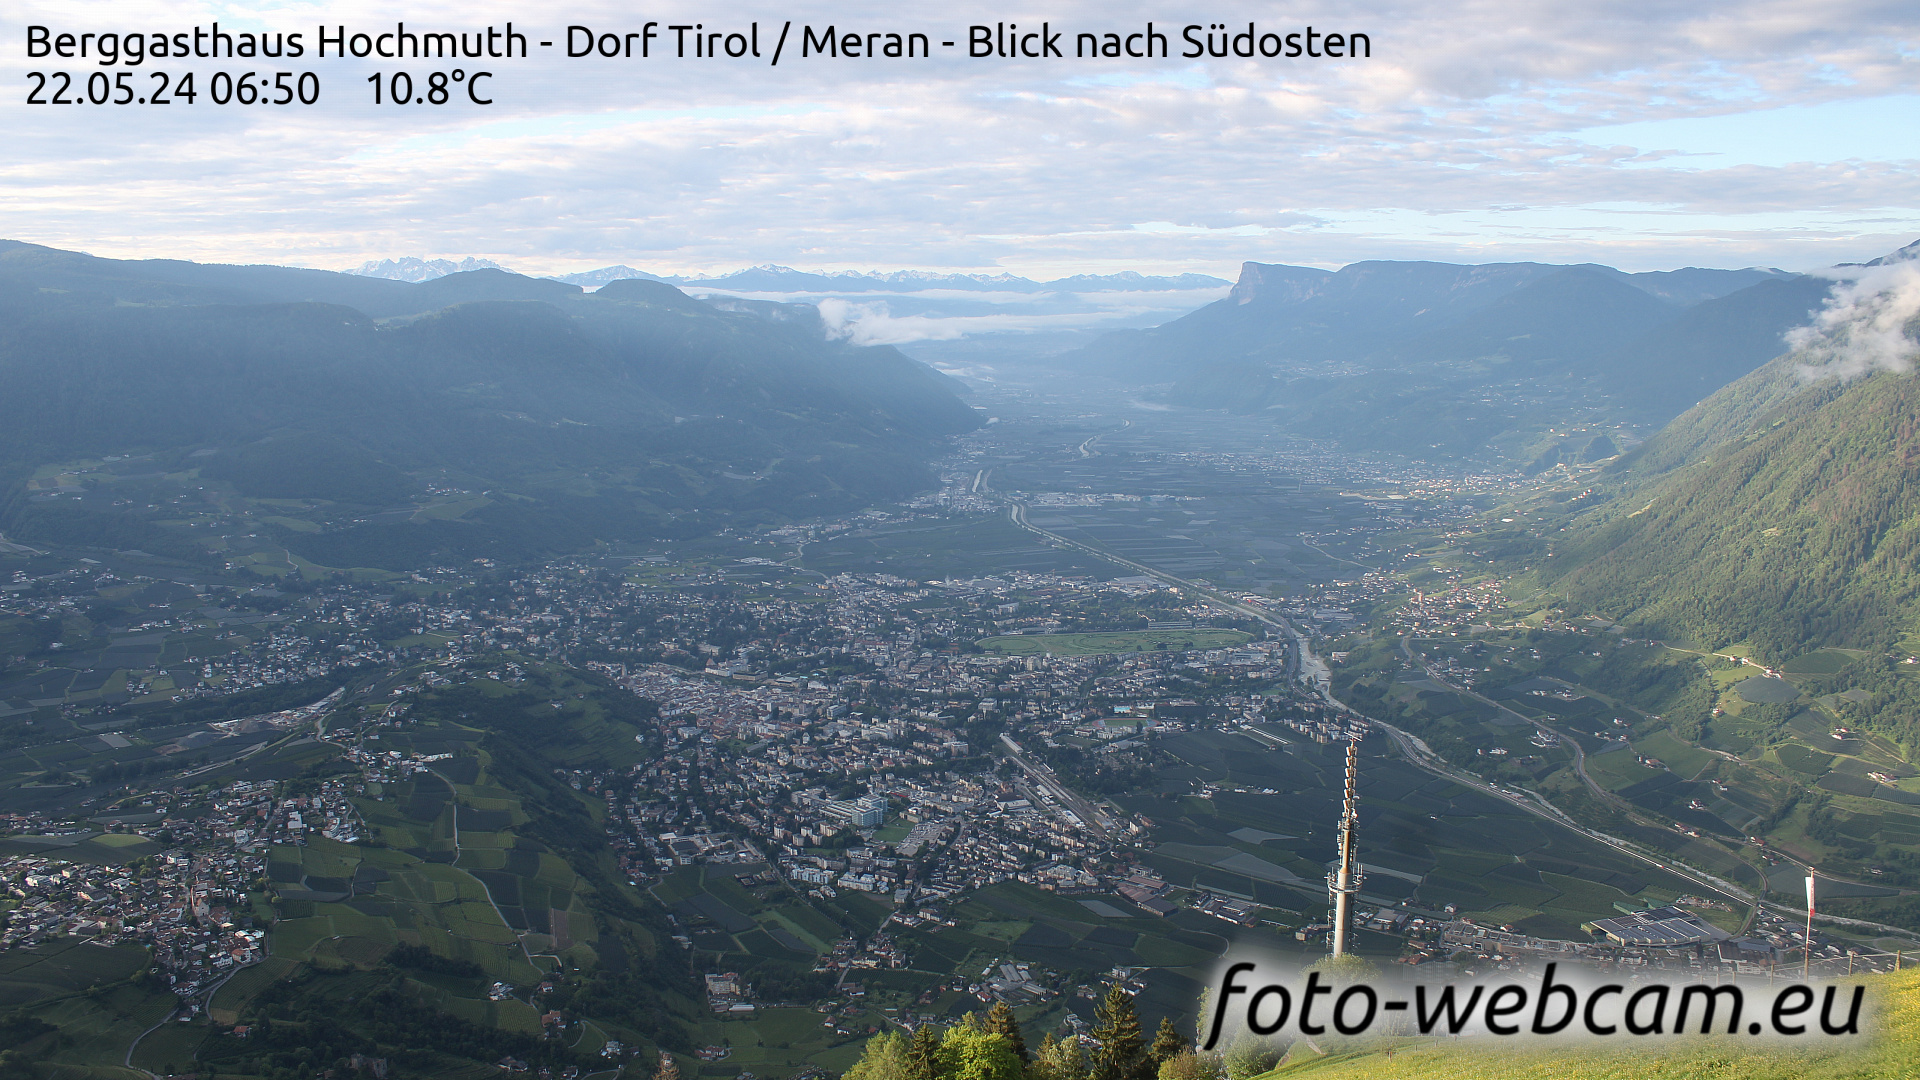 Dorf Tirol Tir. 06:56